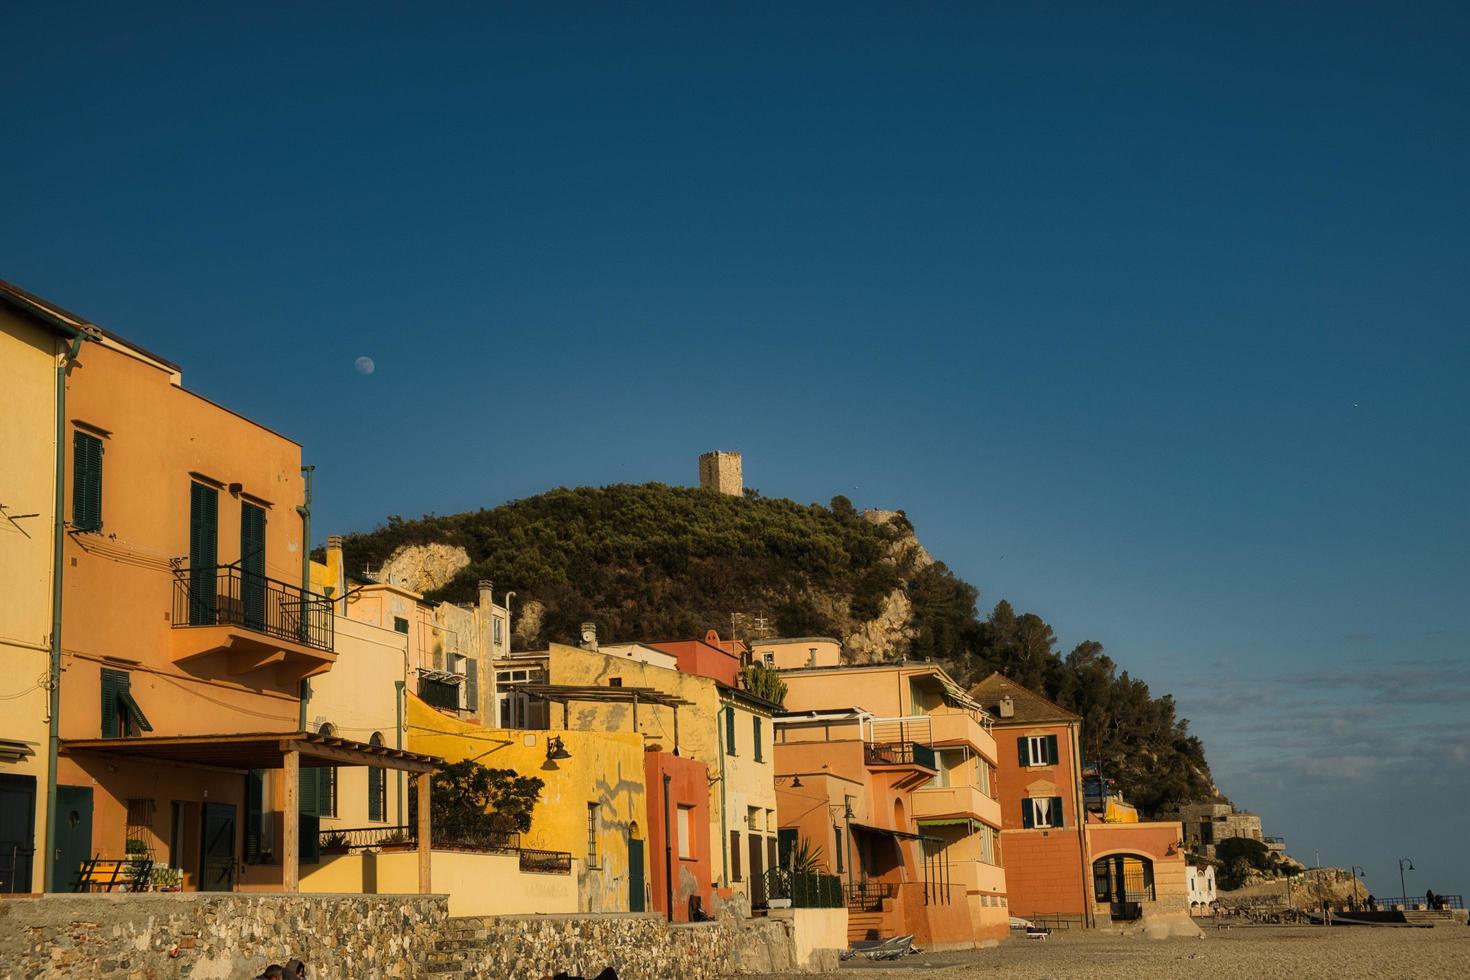 a vila etrusca de varigotti com suas características casas coloridas amarelas fotografadas ao longo da costa mediterrânea foto